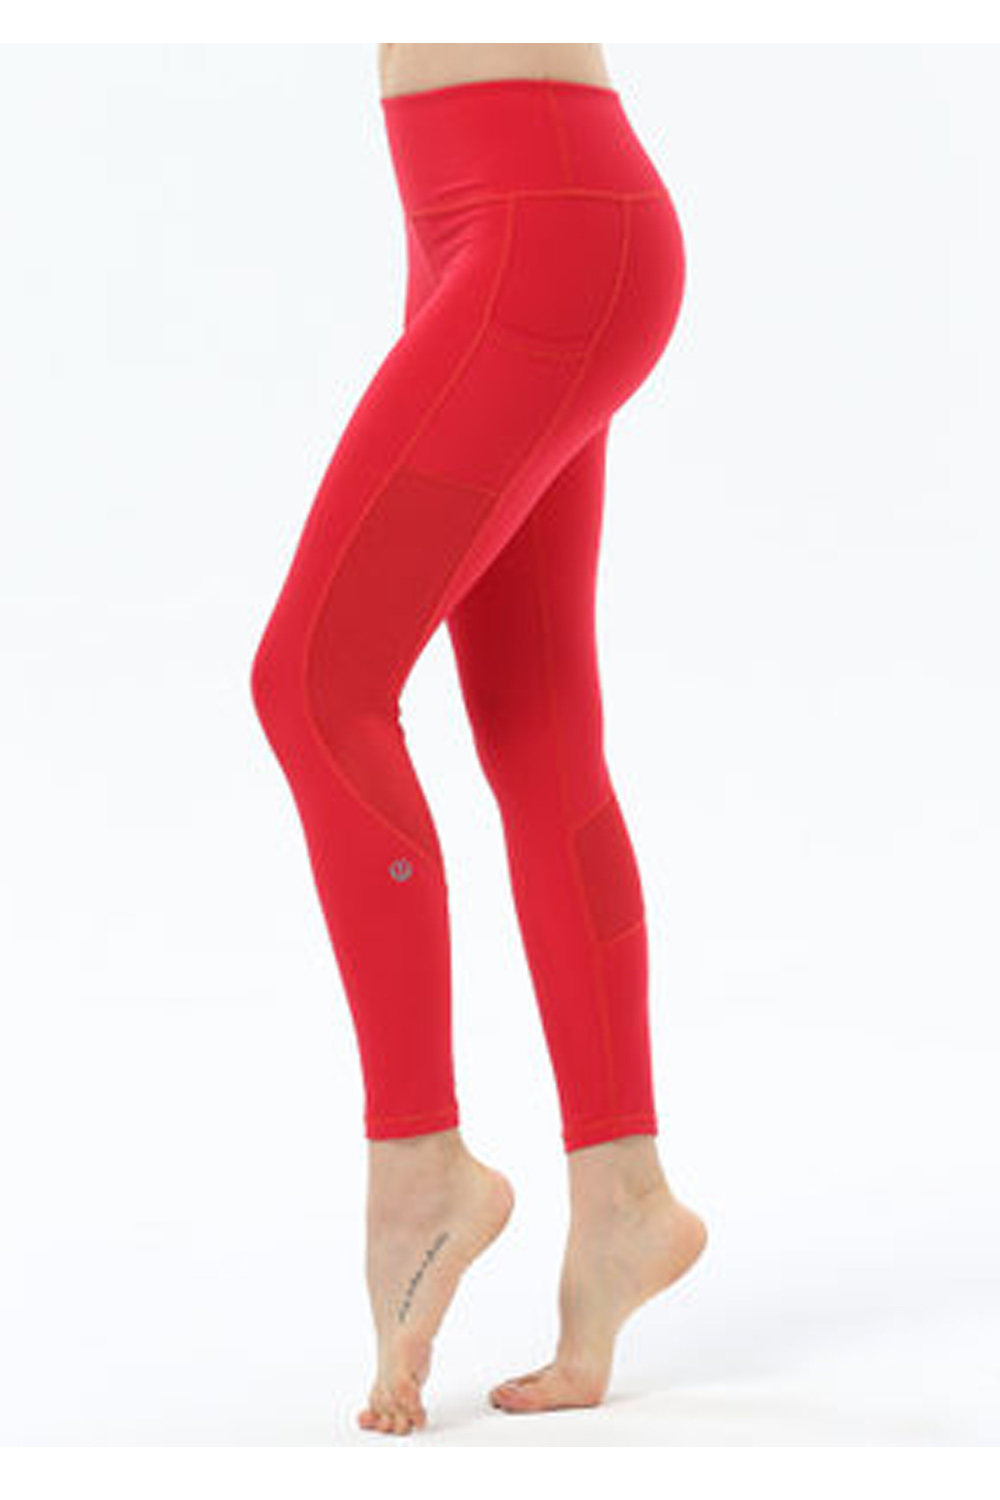 Selected Color is LU red hook net pants